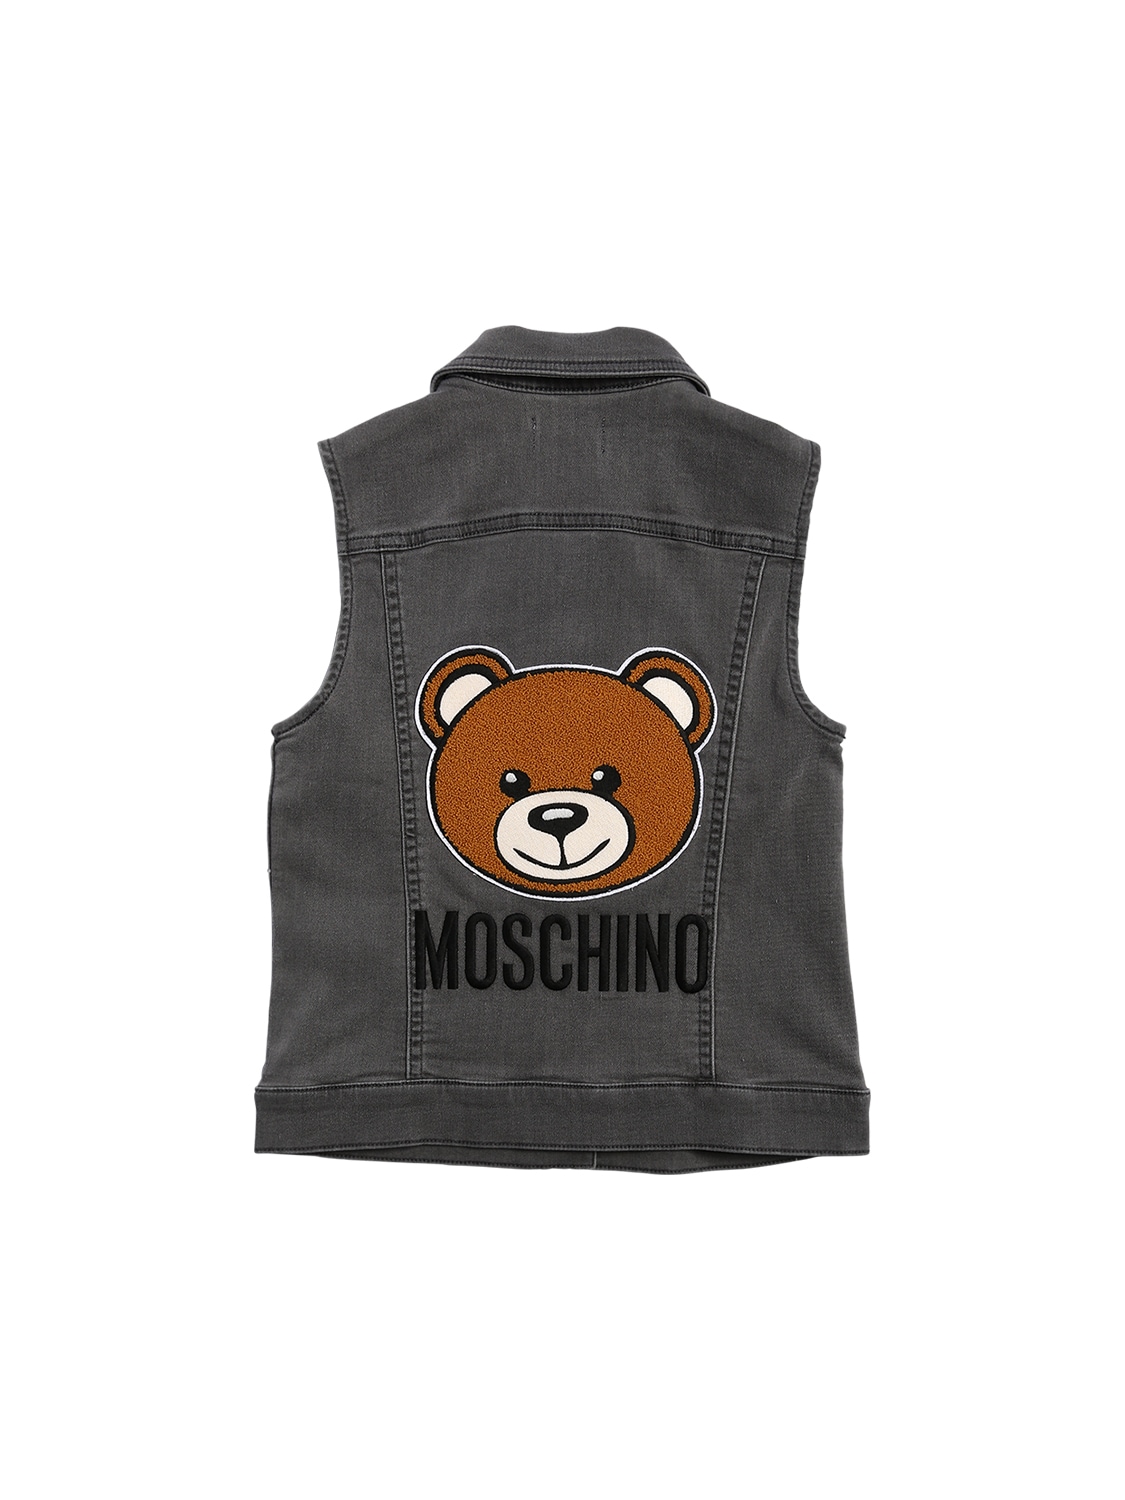 Moschino Kids' Denim Effect Vest W/ Toy Patch In Dark Grey